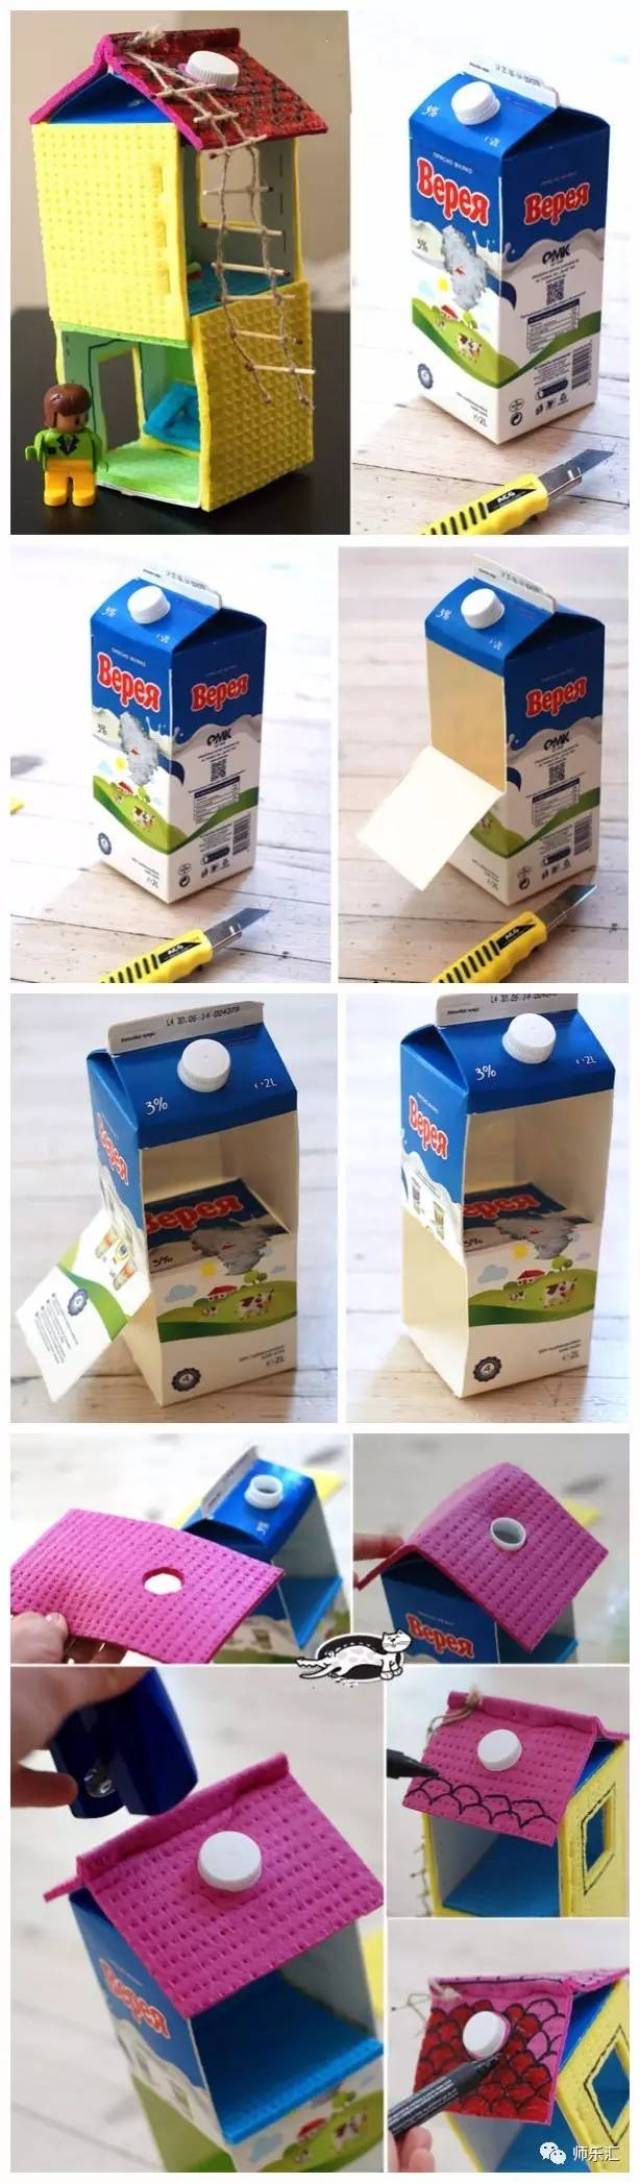 牛奶盒做房子手工制作图片